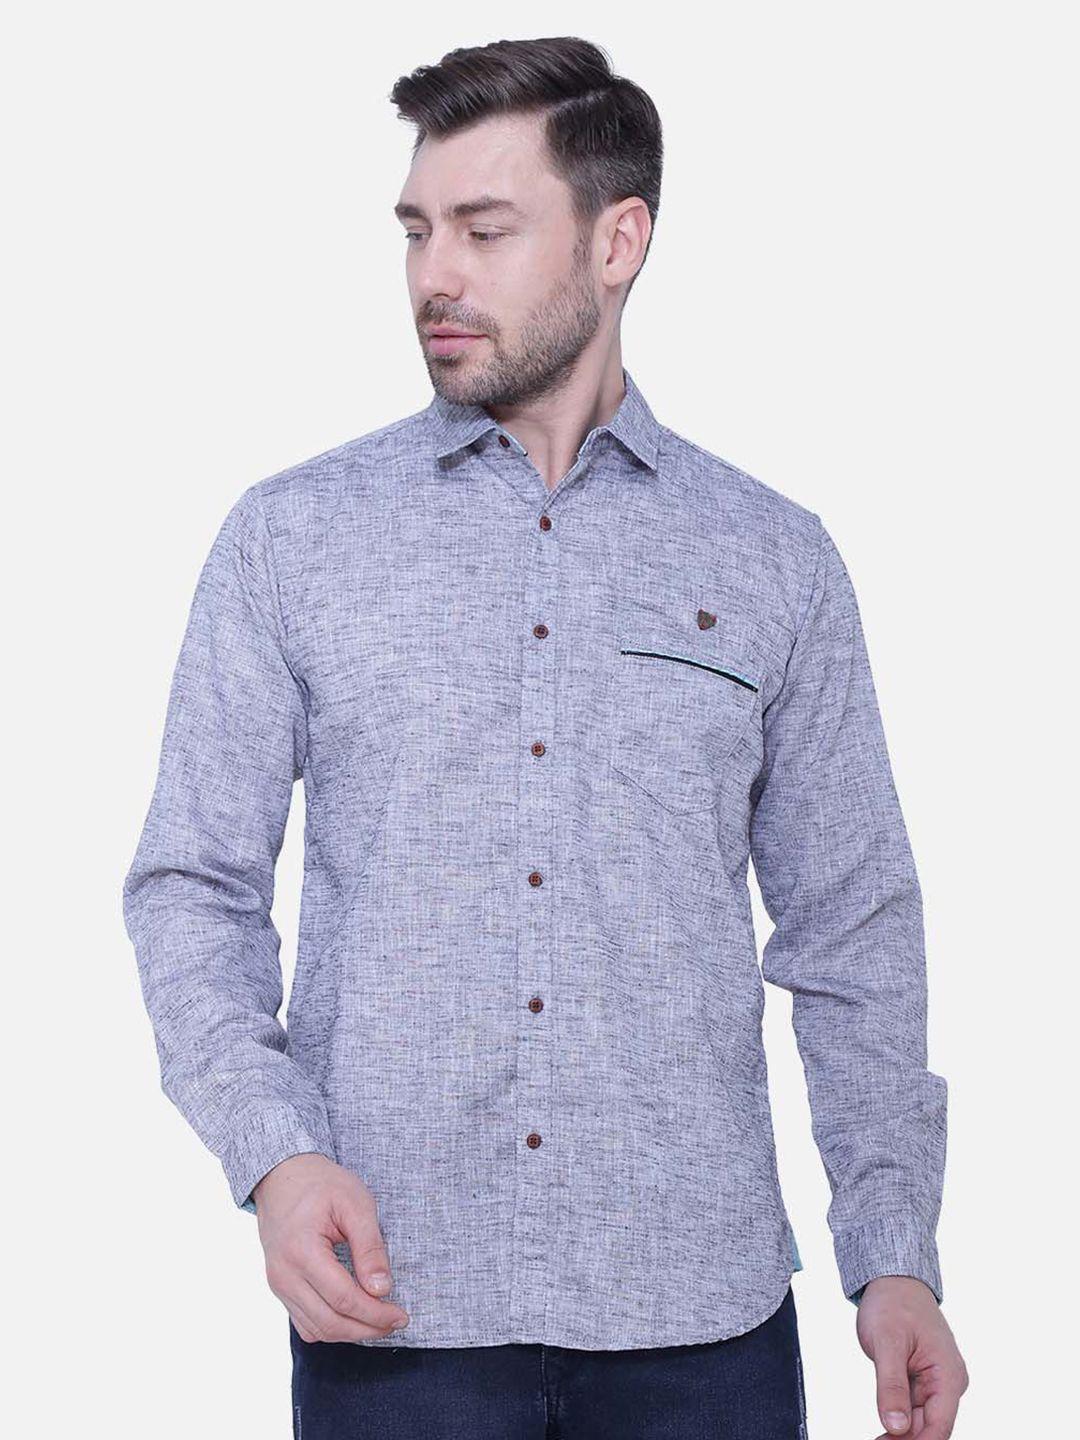 kuons-avenue-men-smart-slim-fit-cotton-linen-casual-shirt